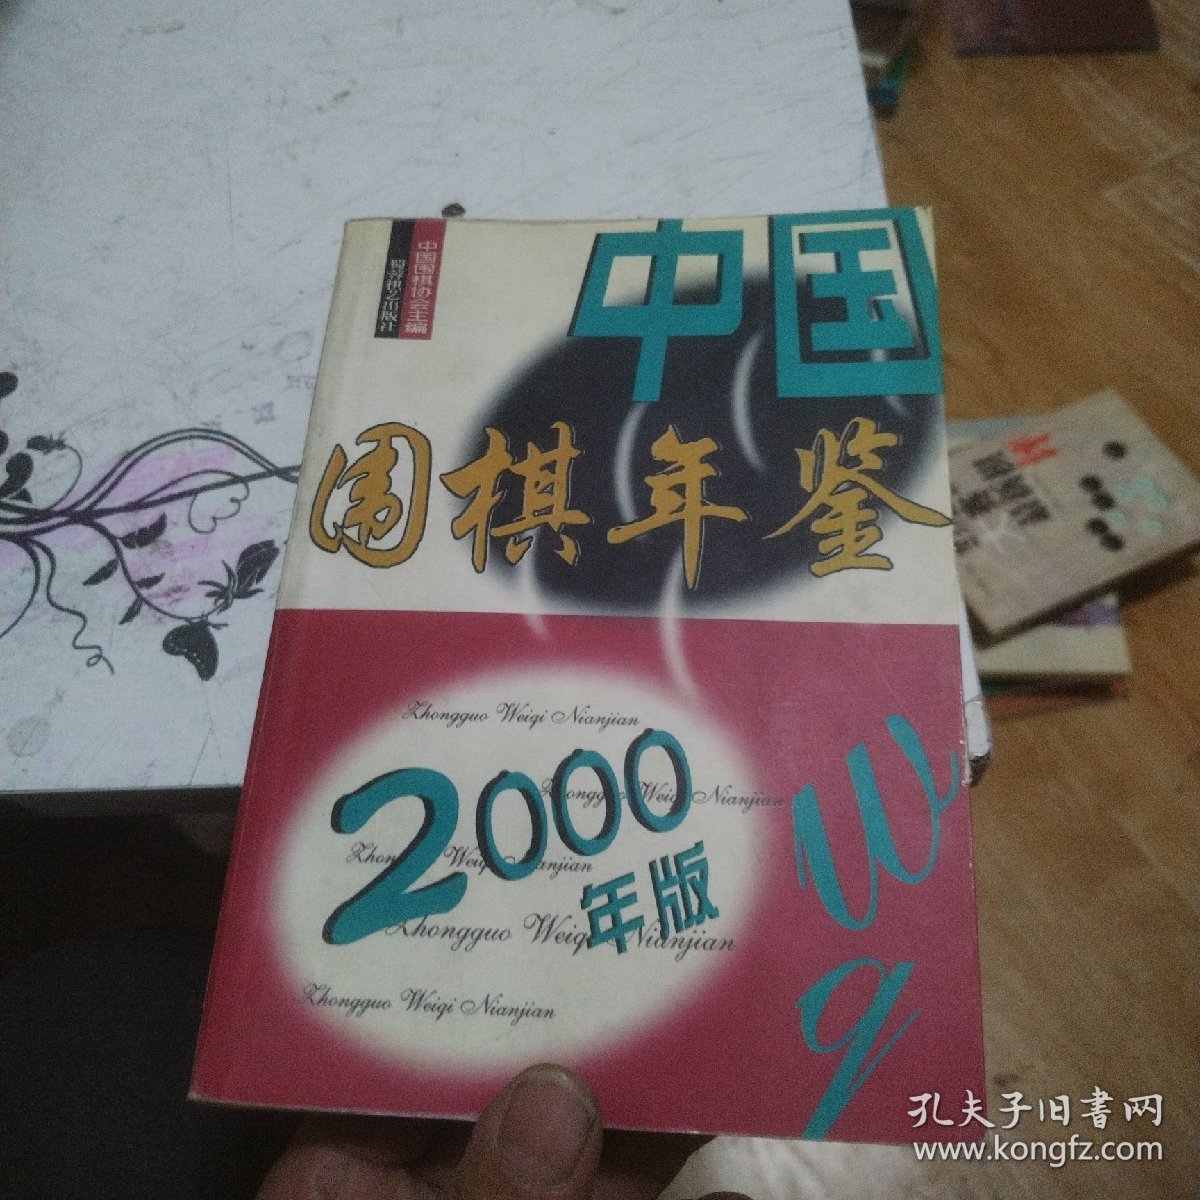 中国围棋年鉴.2000年版